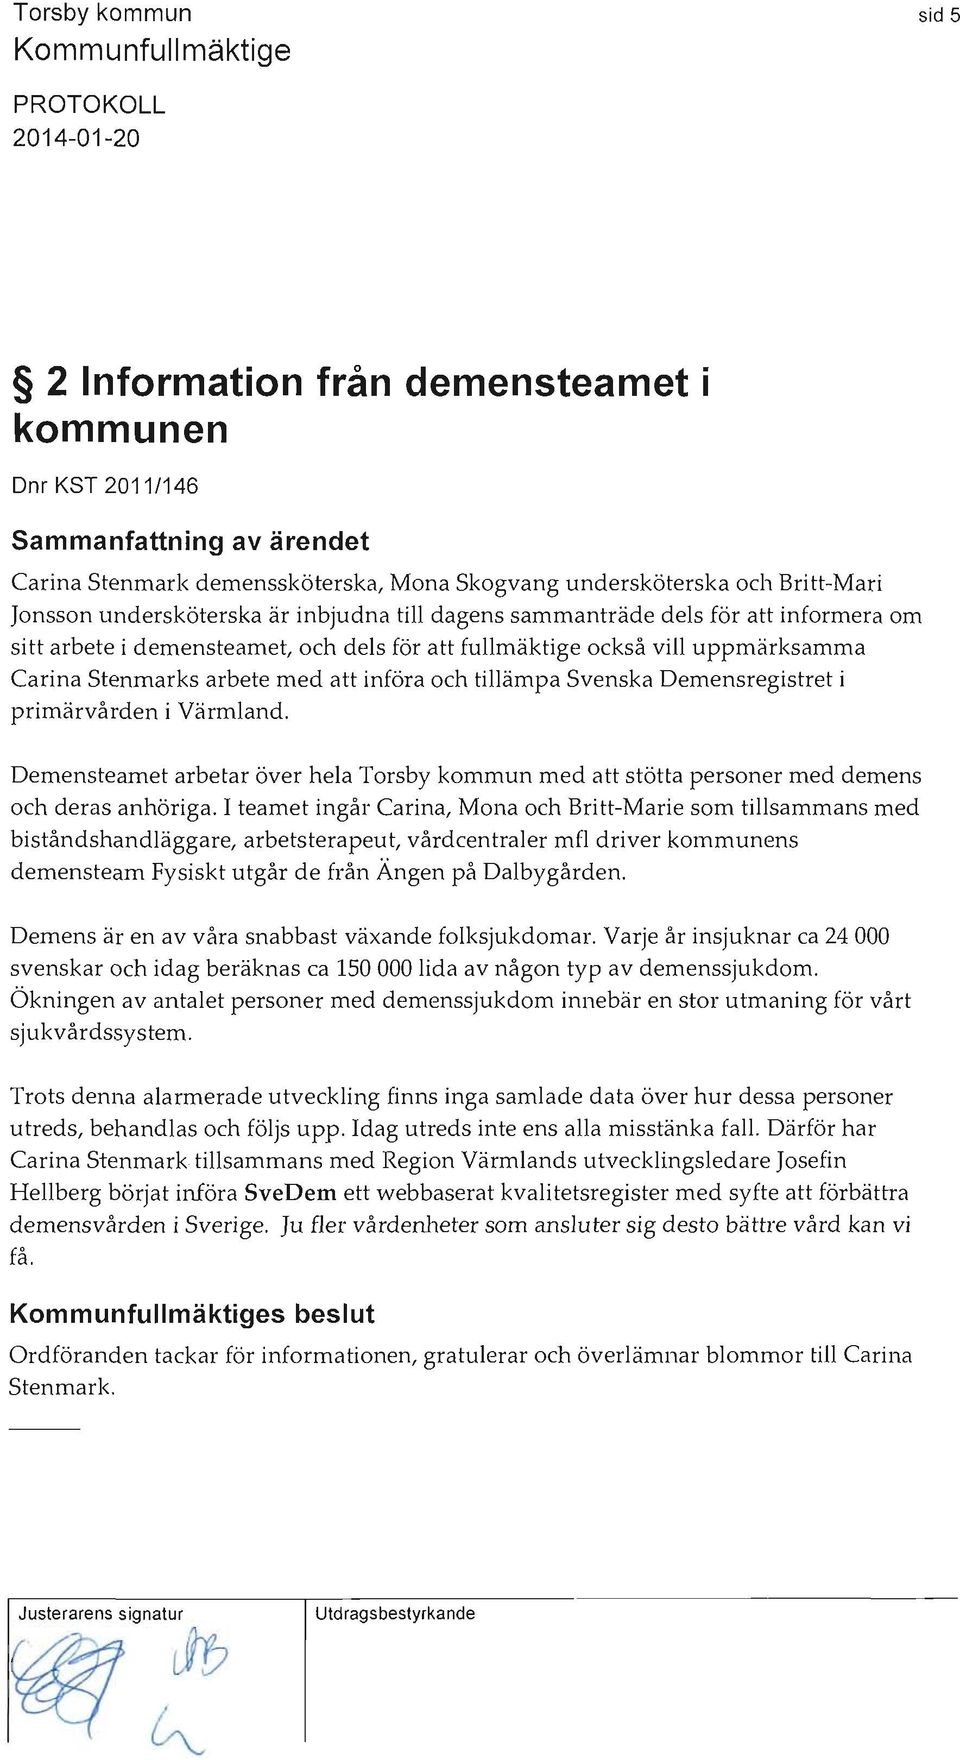 Carina Stenmarks arbete med att införa och tillämpa Svenska Demensregistret i primärvården i Värmland.